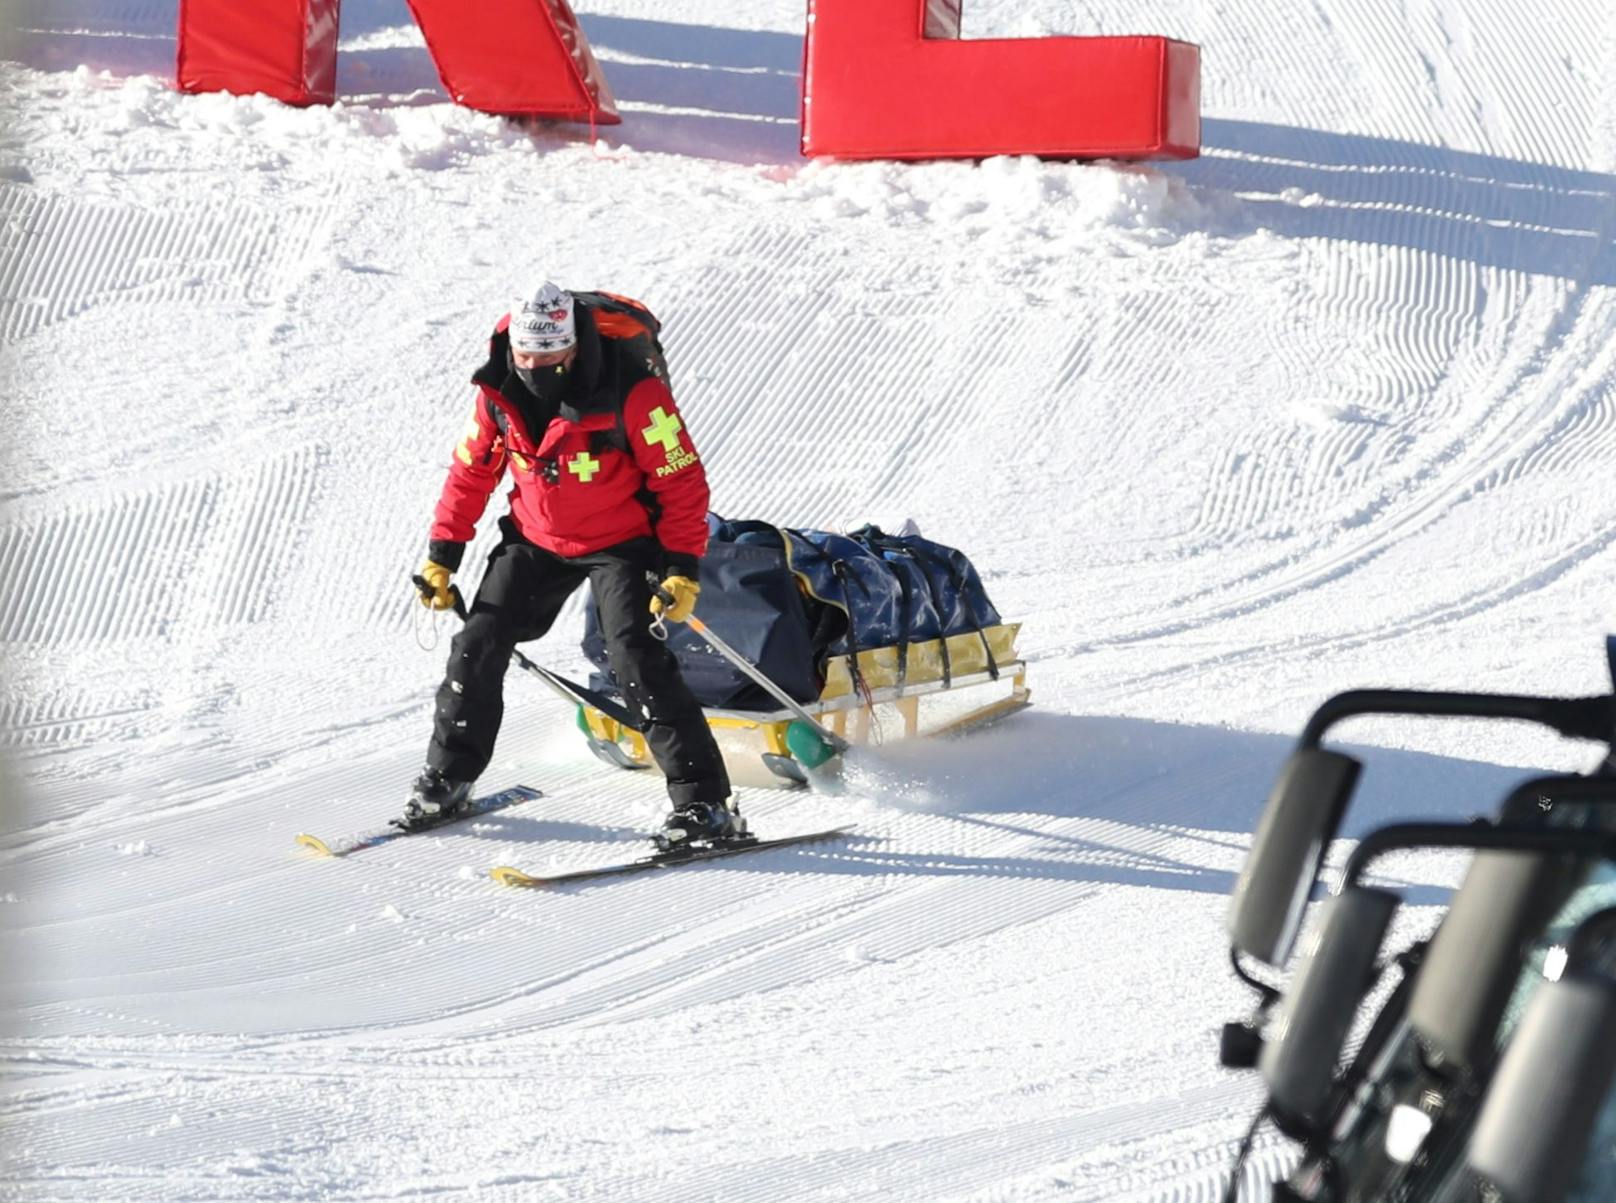 Weltmeisterin Nicole Schmidhofer versetzte die Skifans in Val d'Isere unter Schock. Sie krachte ungebremst in die Fangzäune und blieb liegen, musste lange behandelt und mit dem Helikopter abtransportiert werden. Diagnose: Das Knie ist ein Totalschaden. Sämtliche Bänder sind gerissen, ein Verrenkungsbruch liegt vor. Mehrere Operationen sind nötig.